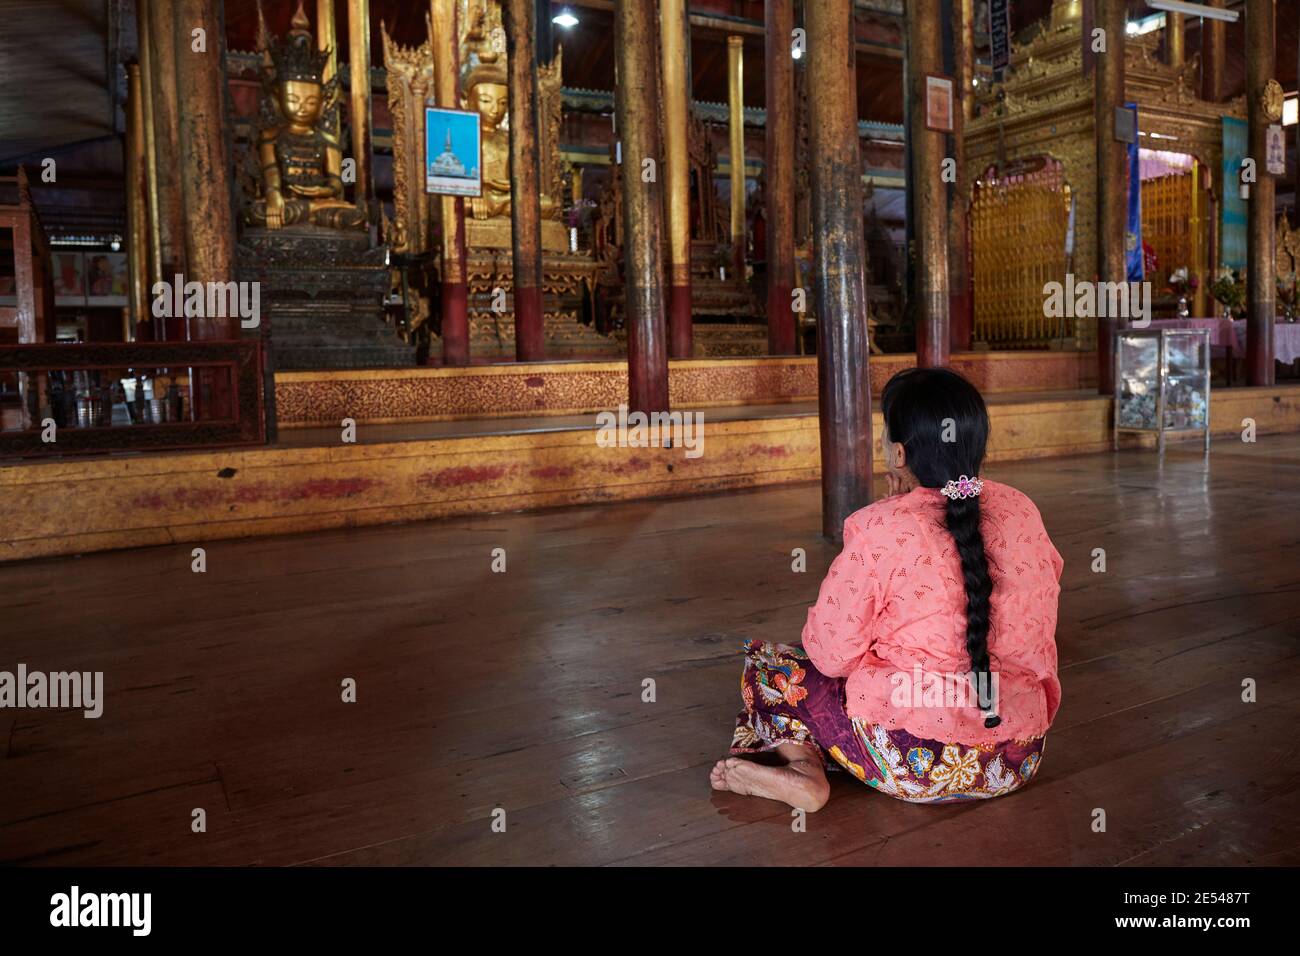 A woman prays inside the Nga Phe Kyaung Monastery, Inle Lake, Myanmar. Stock Photo